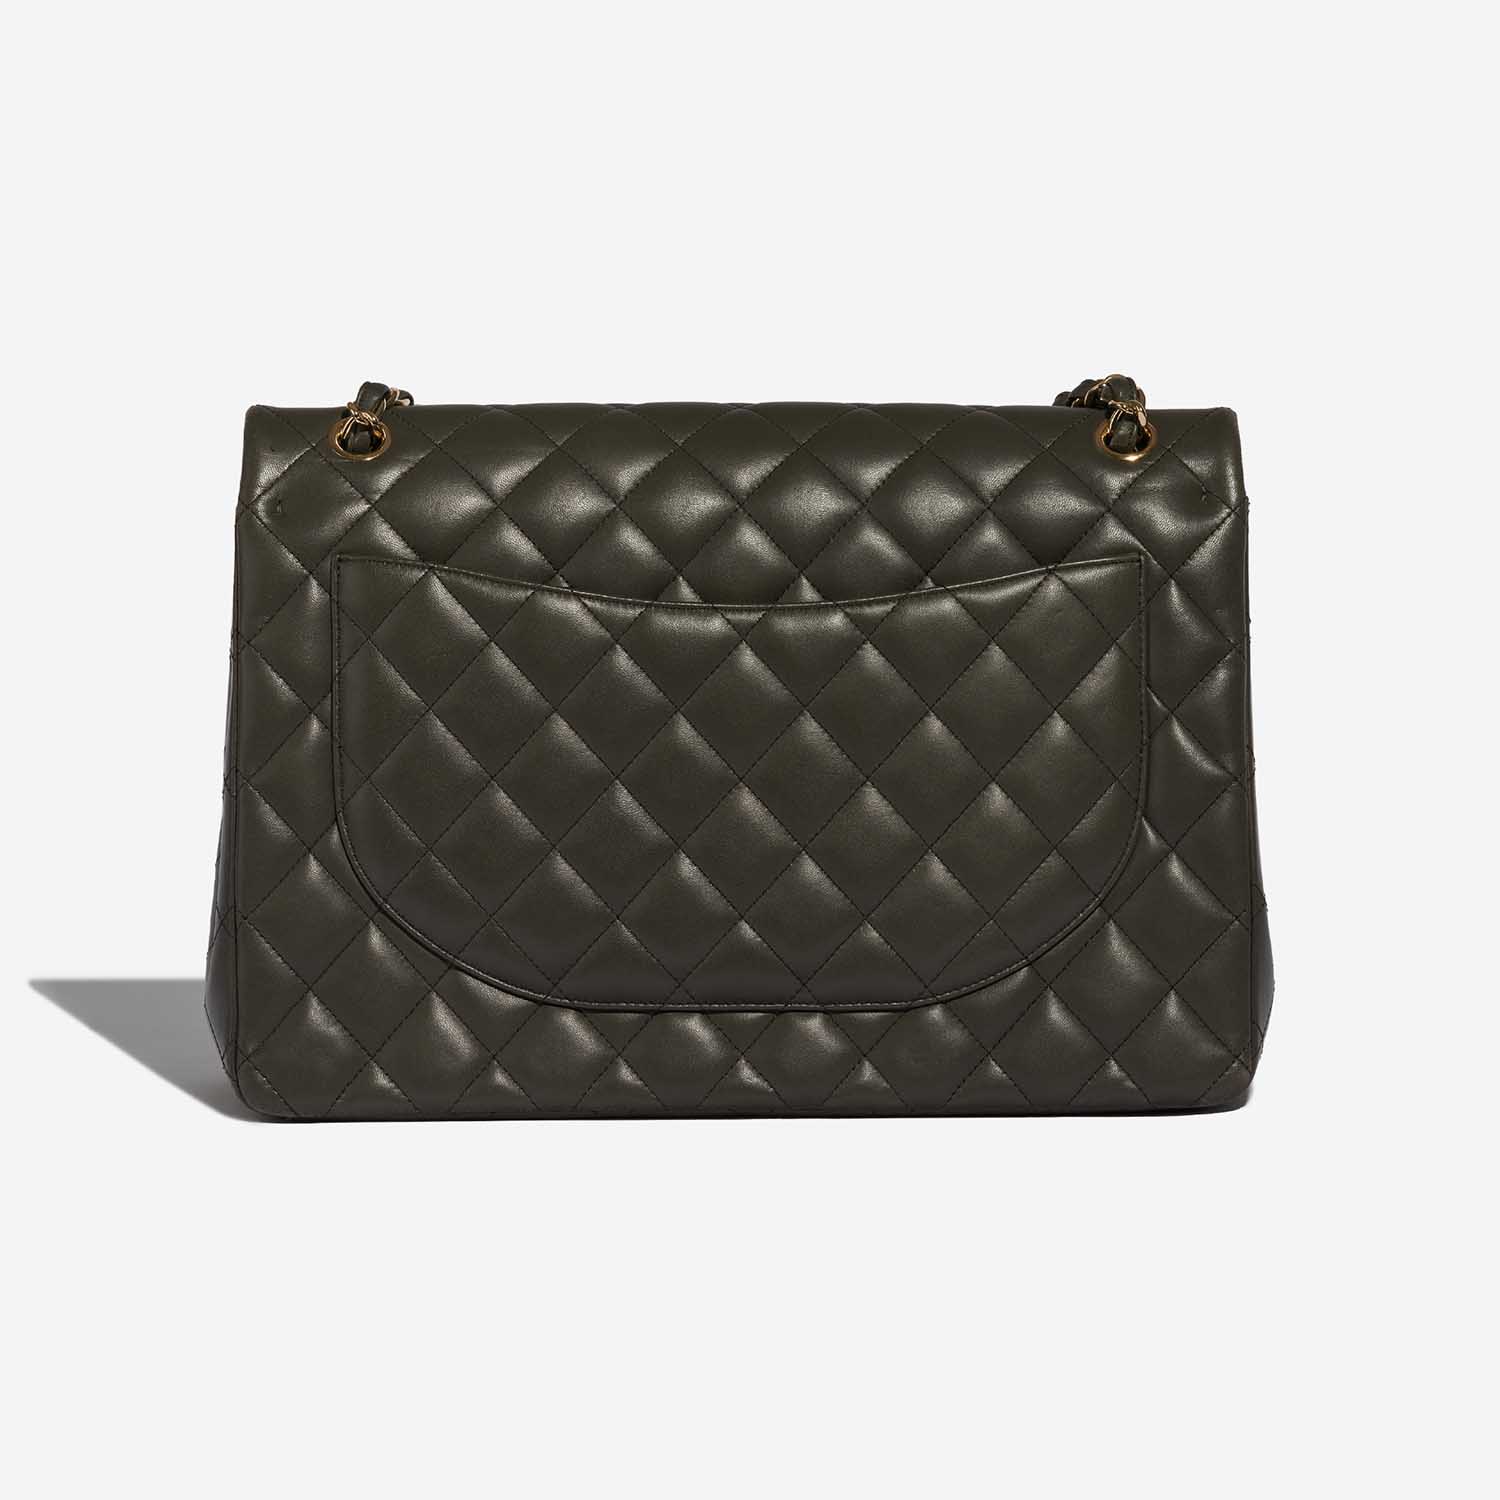 Pre-owned Chanel Tasche Timeless Maxi Lammleder Khaki Grün Zurück | Verkaufen Sie Ihre Designer-Tasche auf Saclab.com